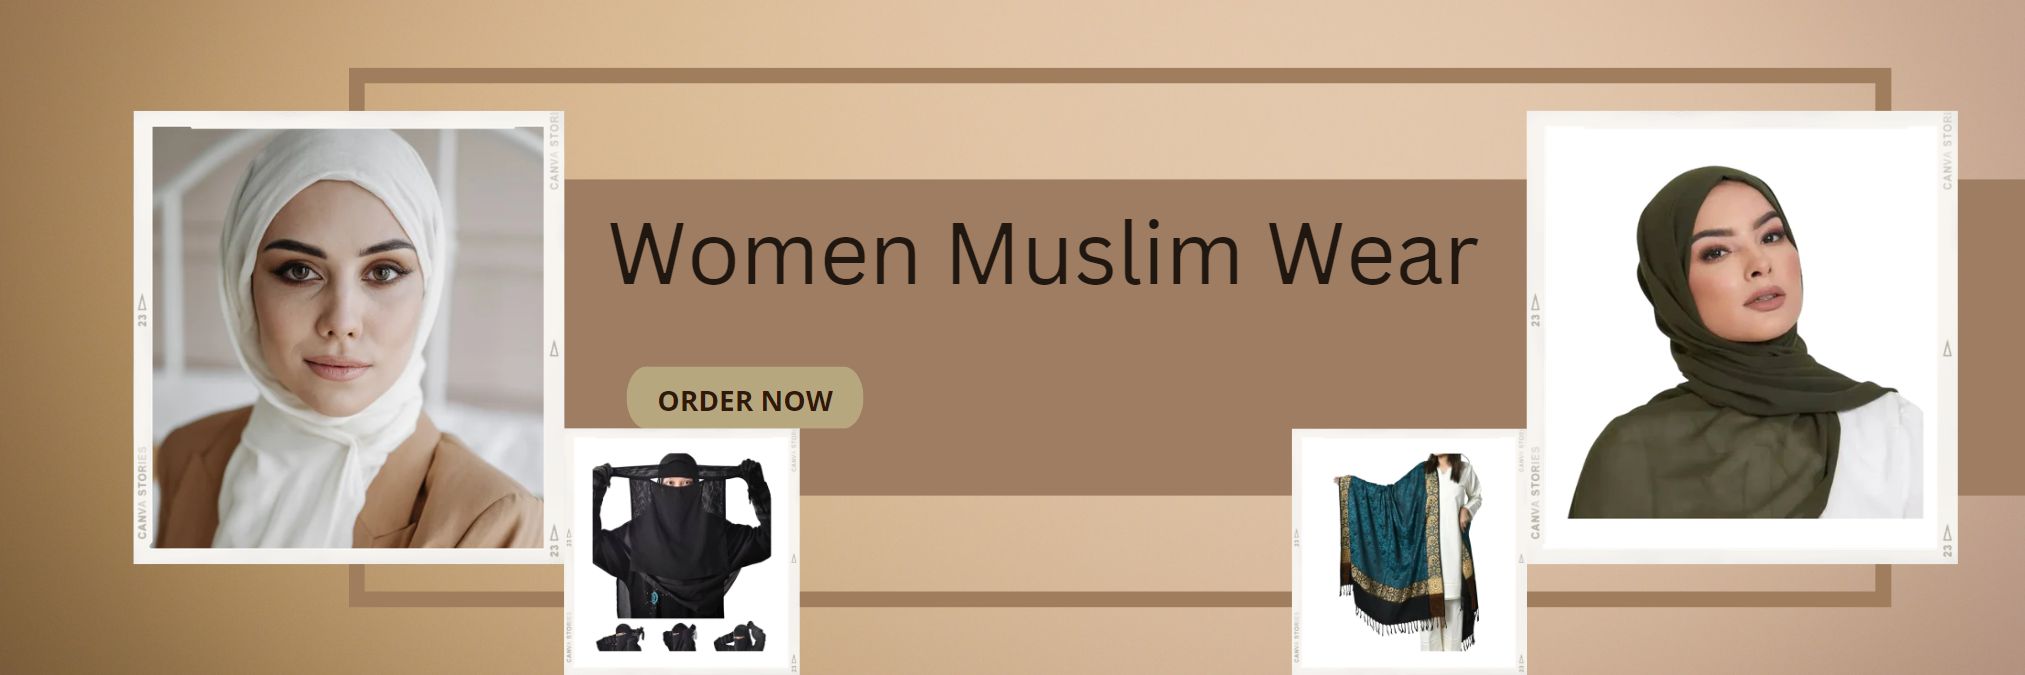 Women Muslim Wear